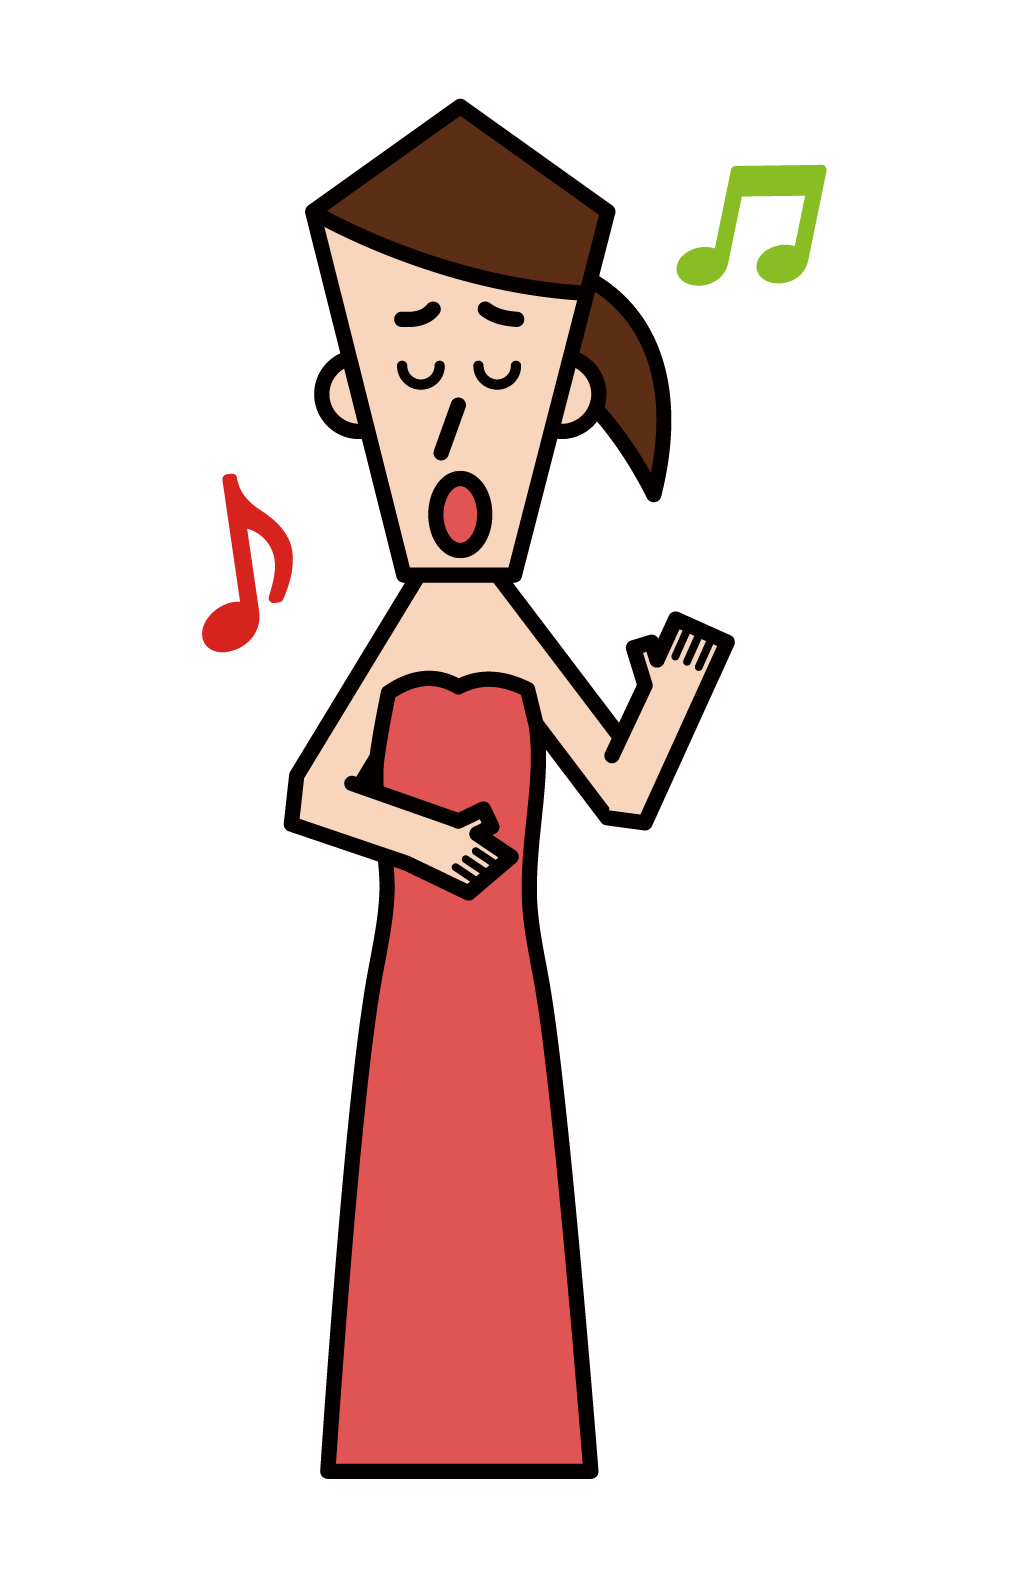 歌劇歌手和聲樂家(女性)的插圖